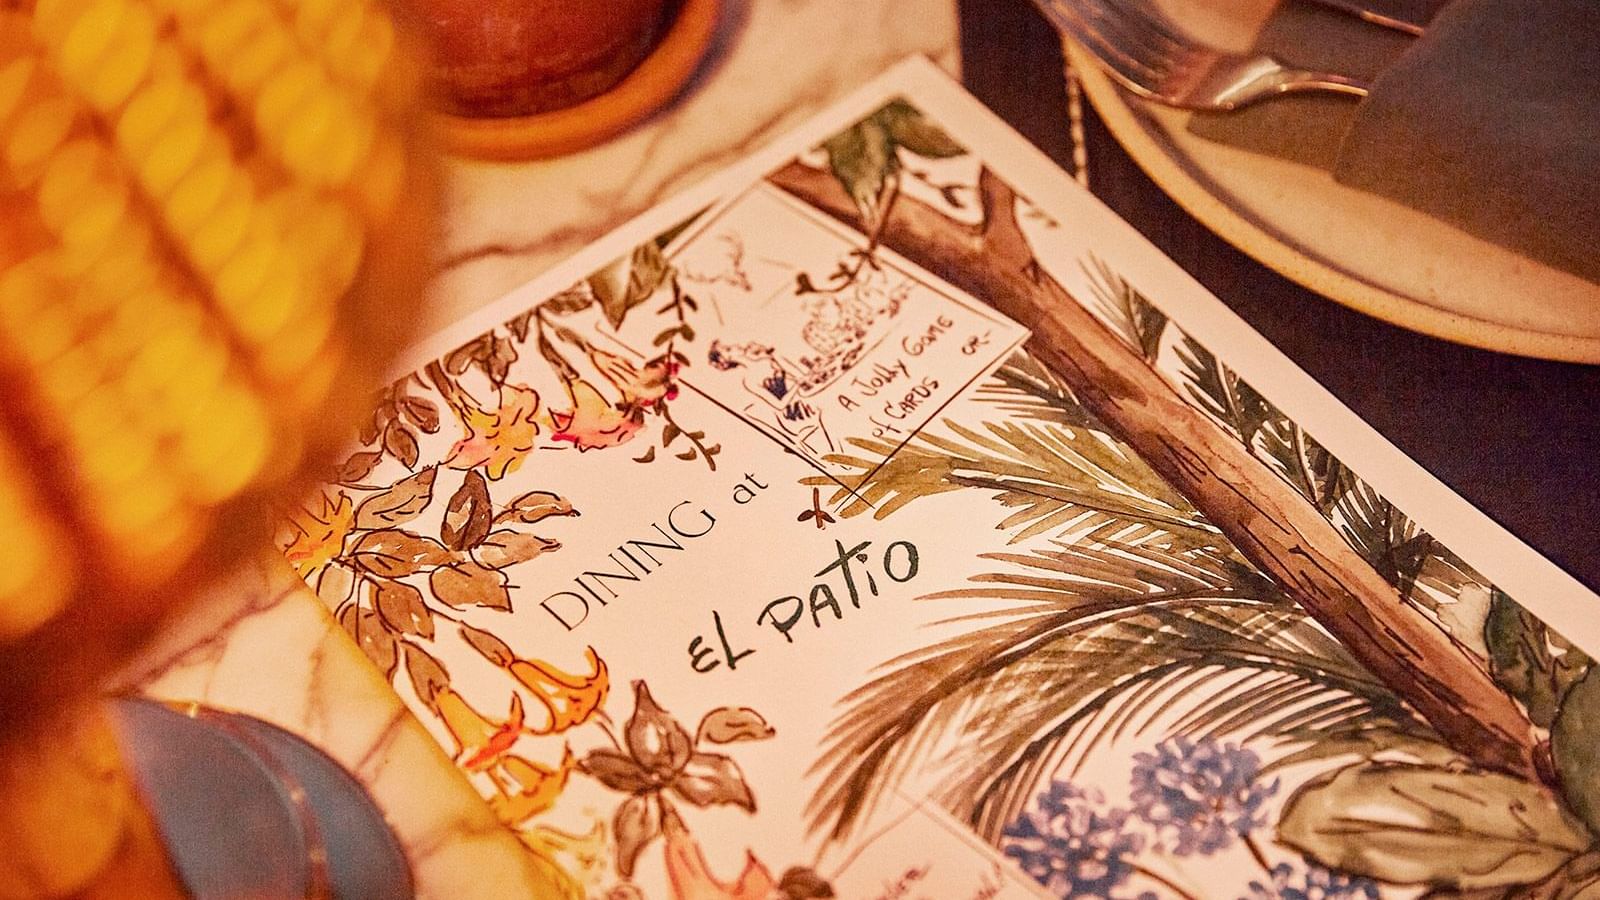 Menu book of El Patio Restaurant at Marbella Club Hotel